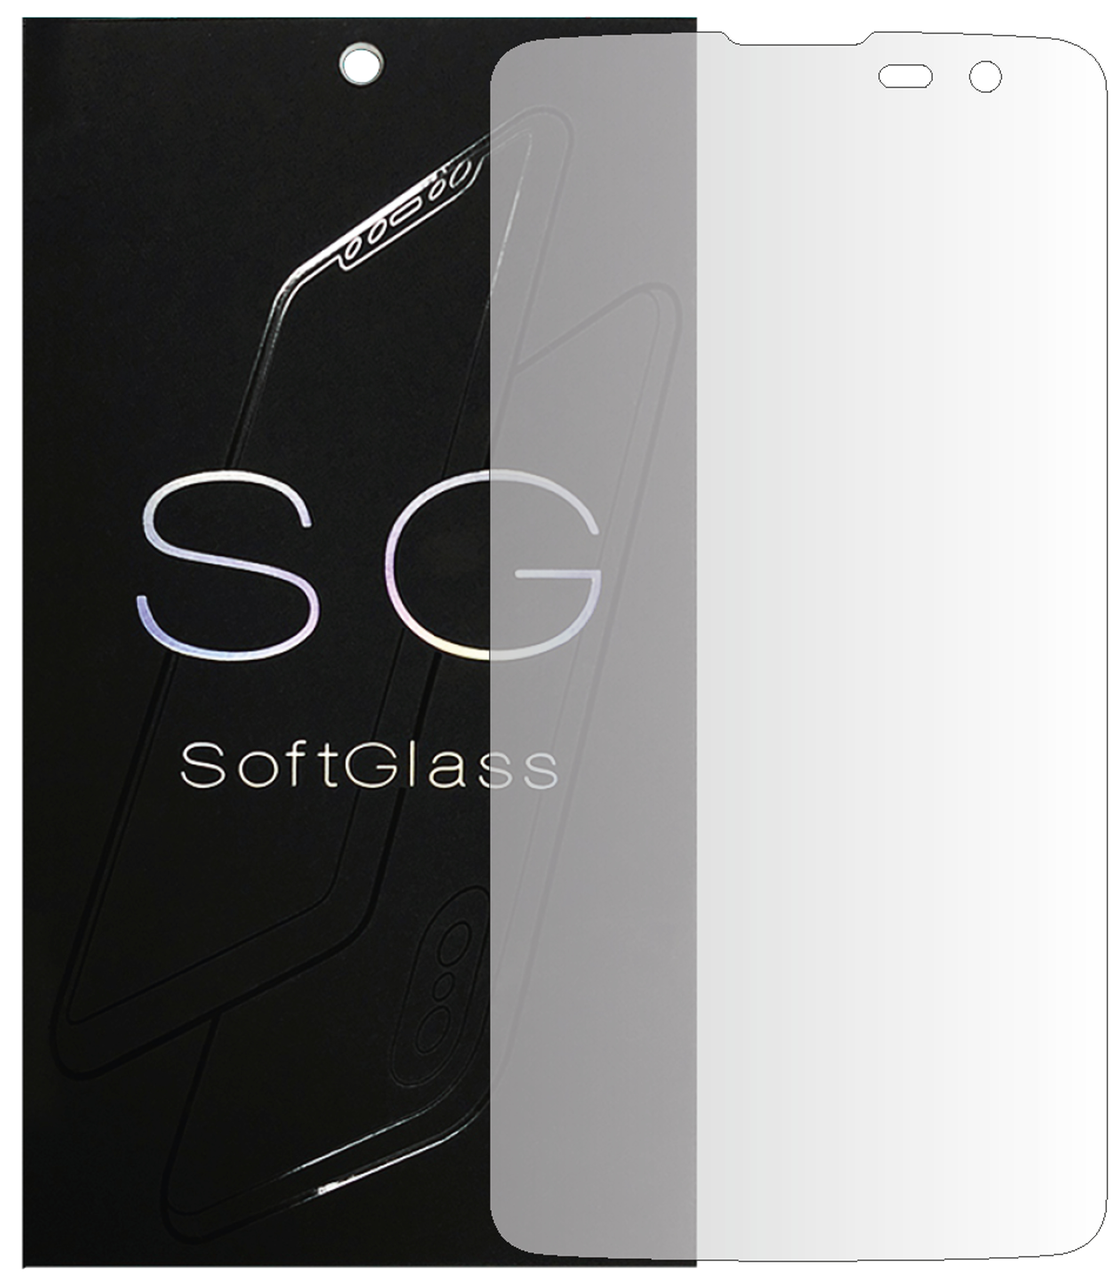 Бронеплівка LG K7 x210 на екран поліуретанова SoftGlass